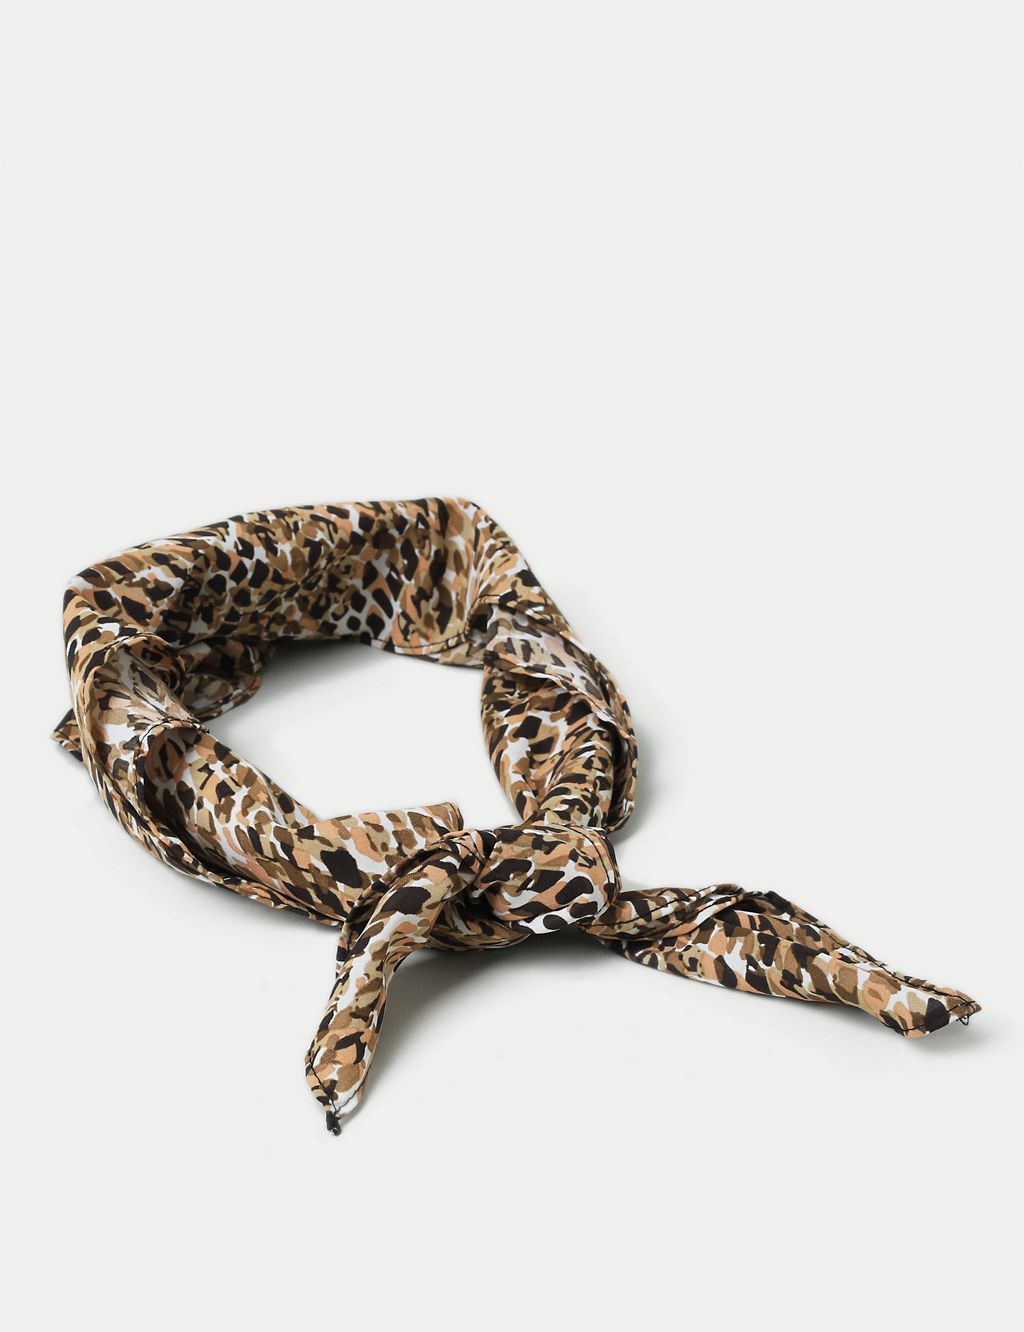 Leopard Hair Tie Wrap 2 of 3